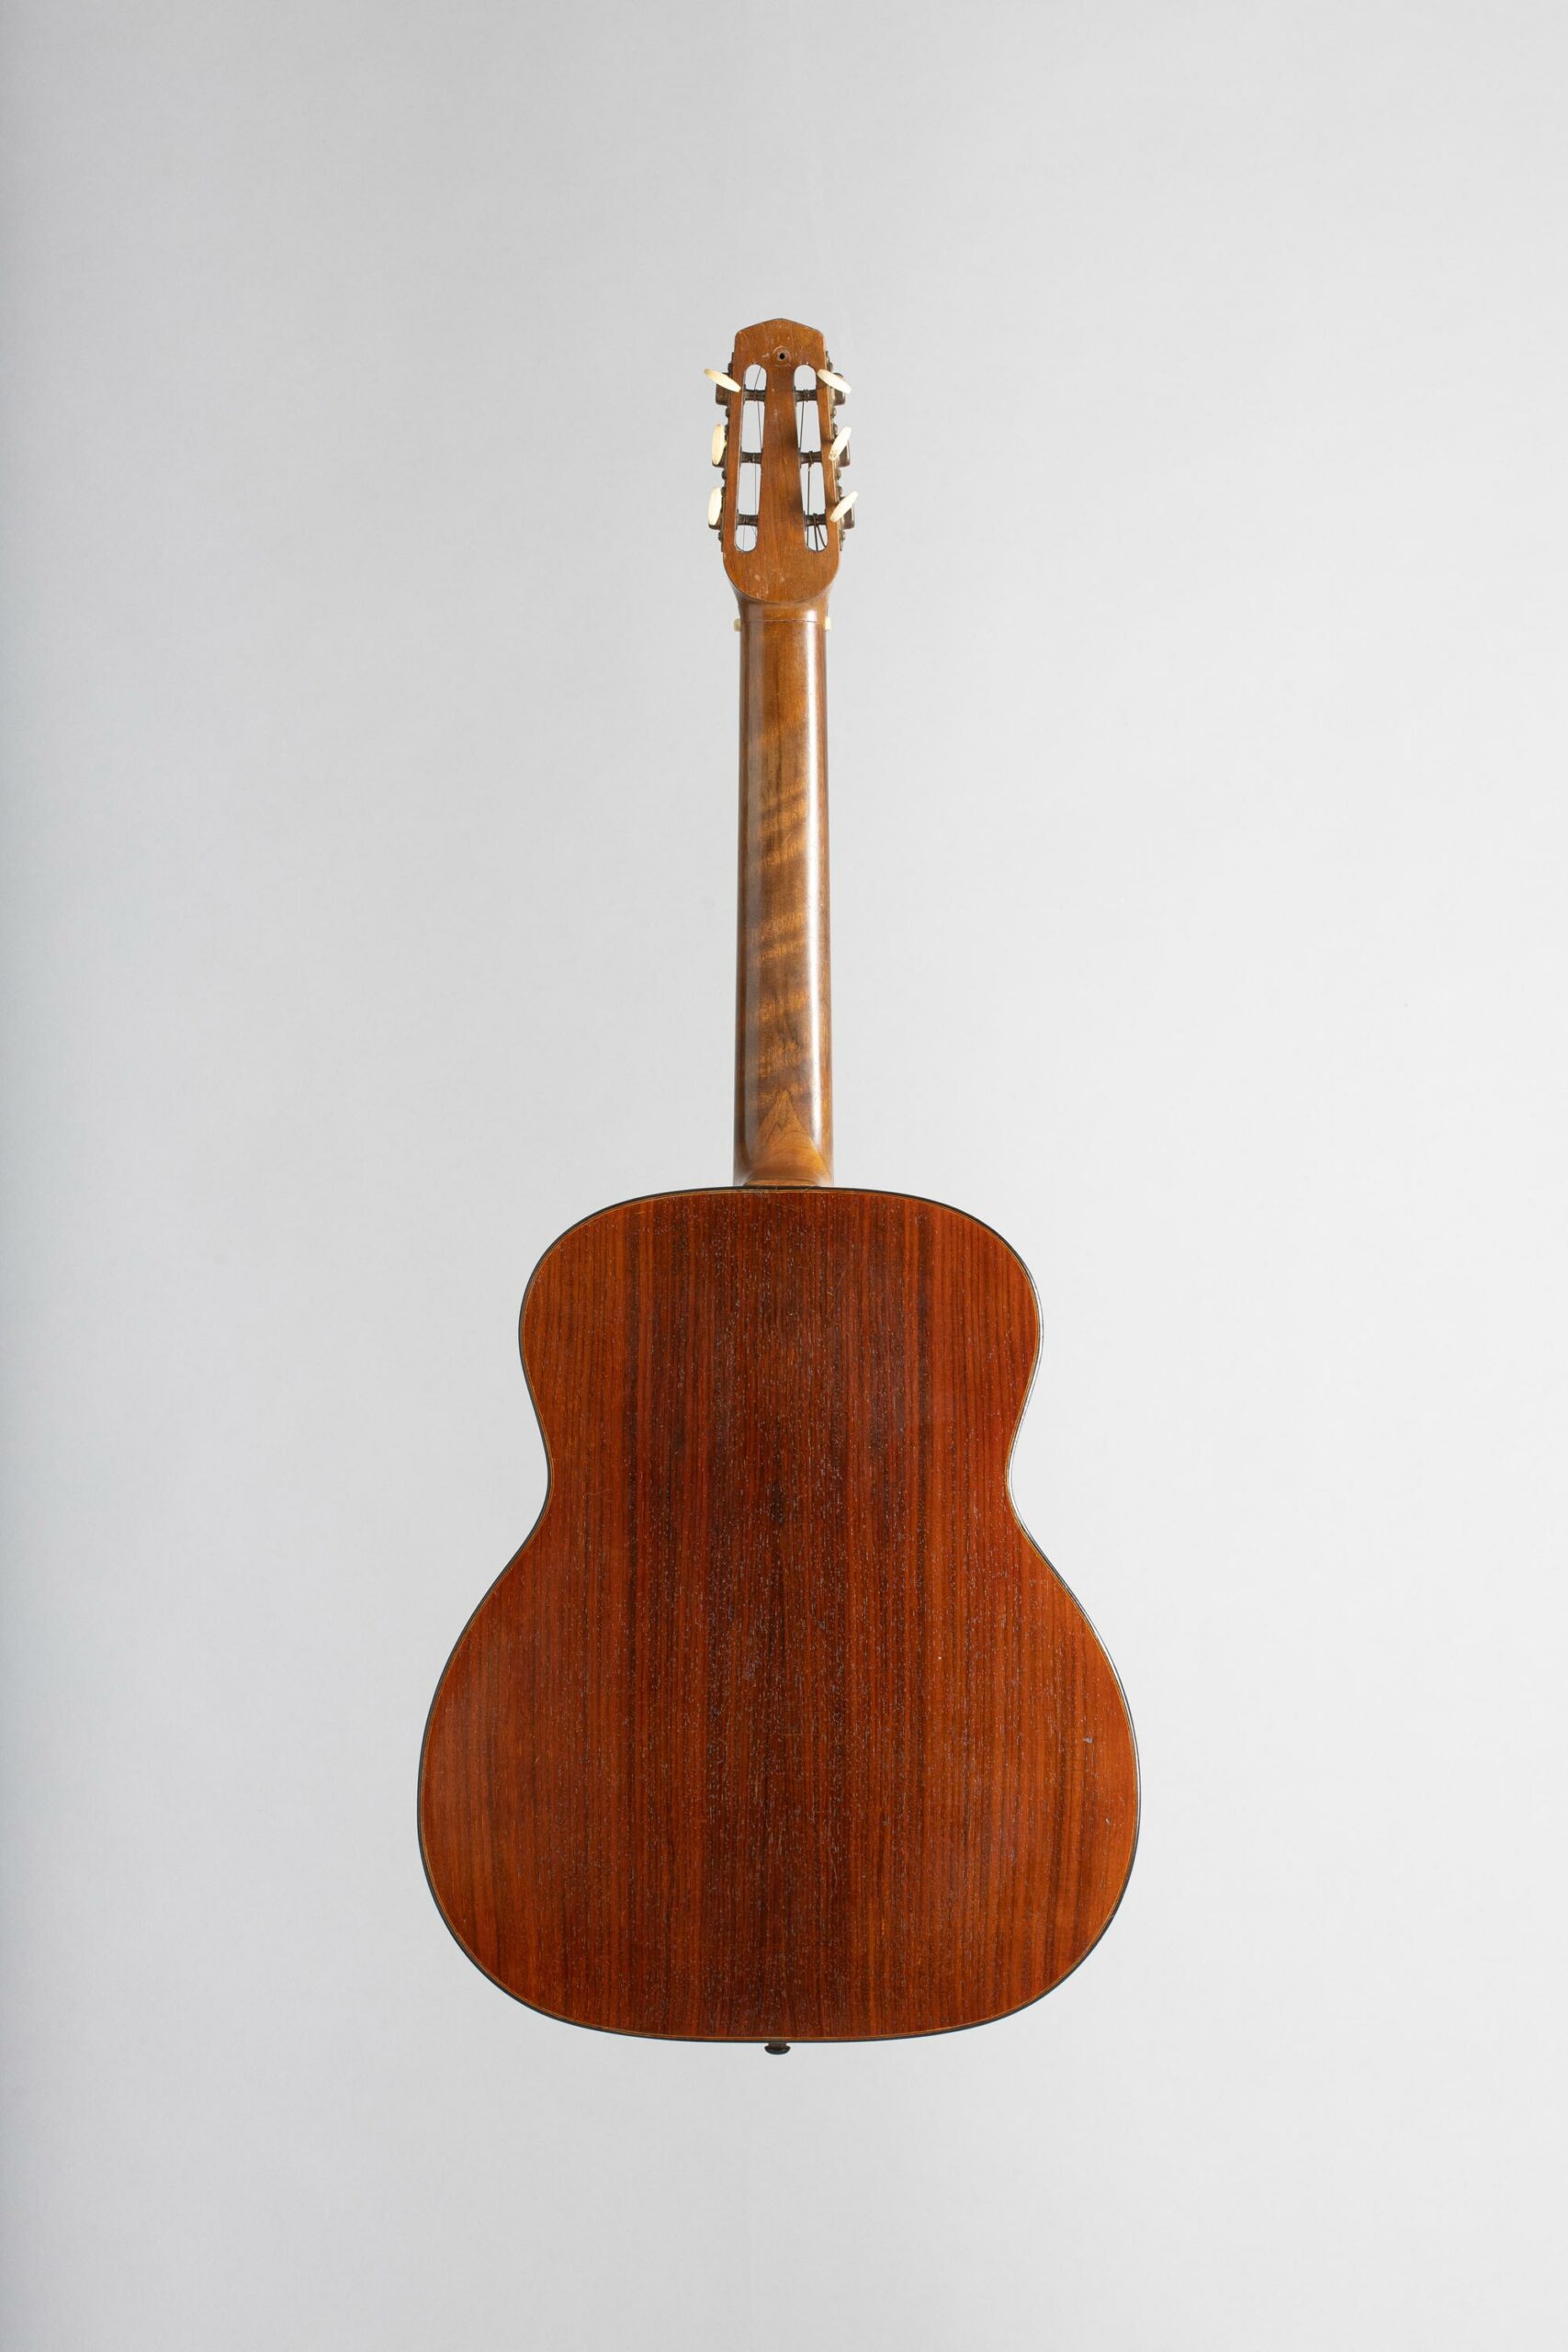 Guitare Hawaienne SELMER Maccaferri, pat. n° 10431, modèle Hawaienne six cordes, n° 150 faite vers 1936, Vichy Enchères, 5 novembre 2022